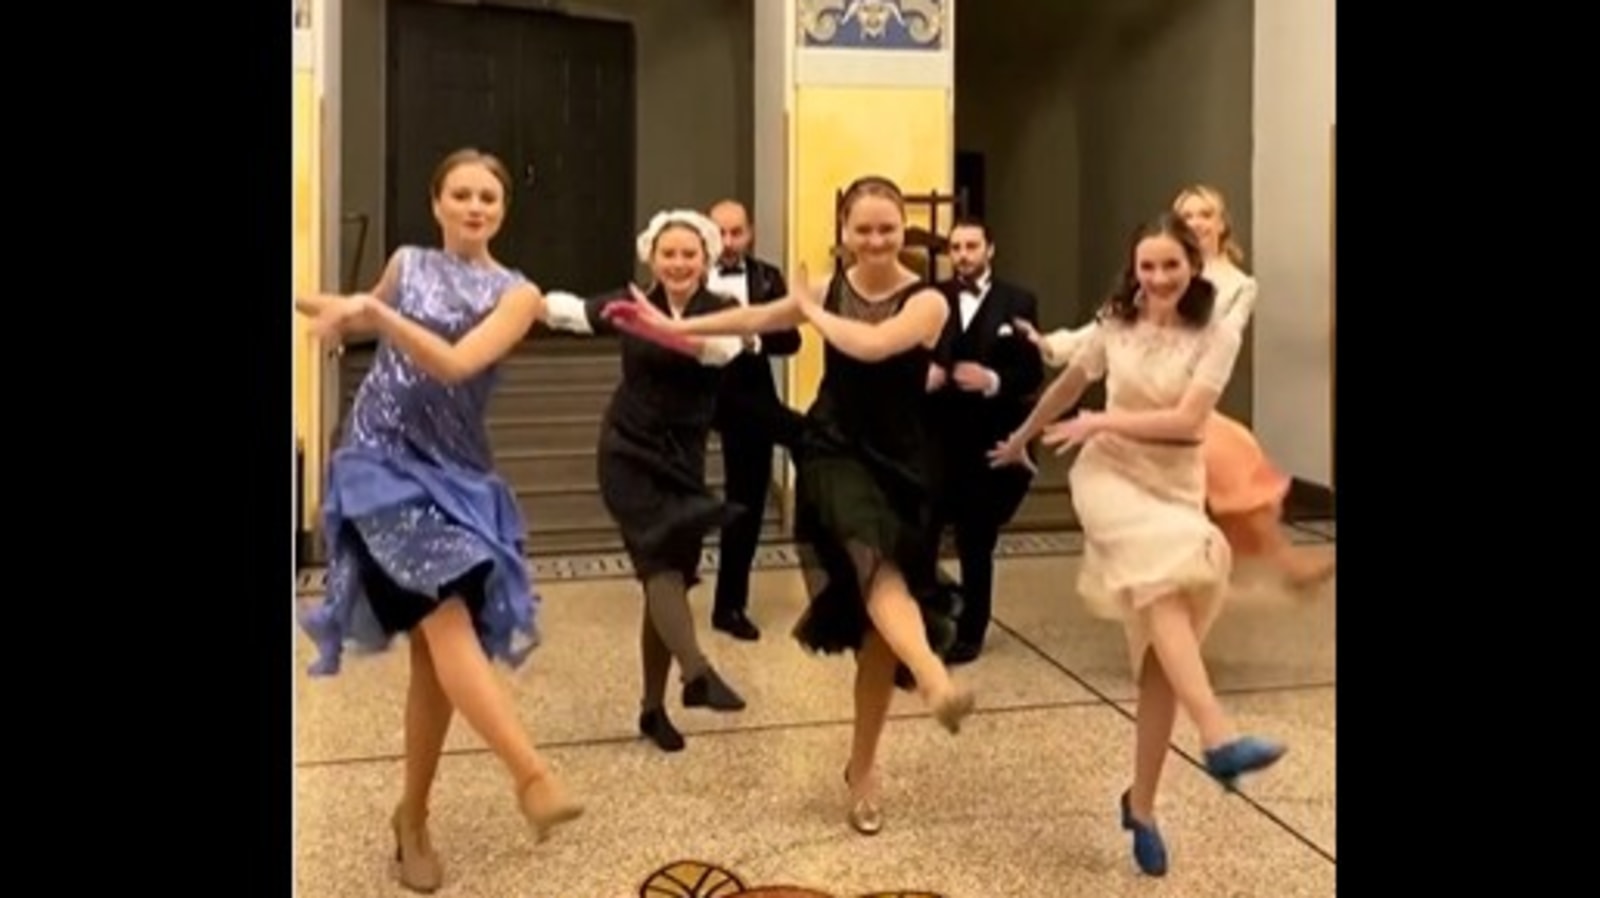 Opera singers hop on viral Instagram trend, dance to 'Nuestra